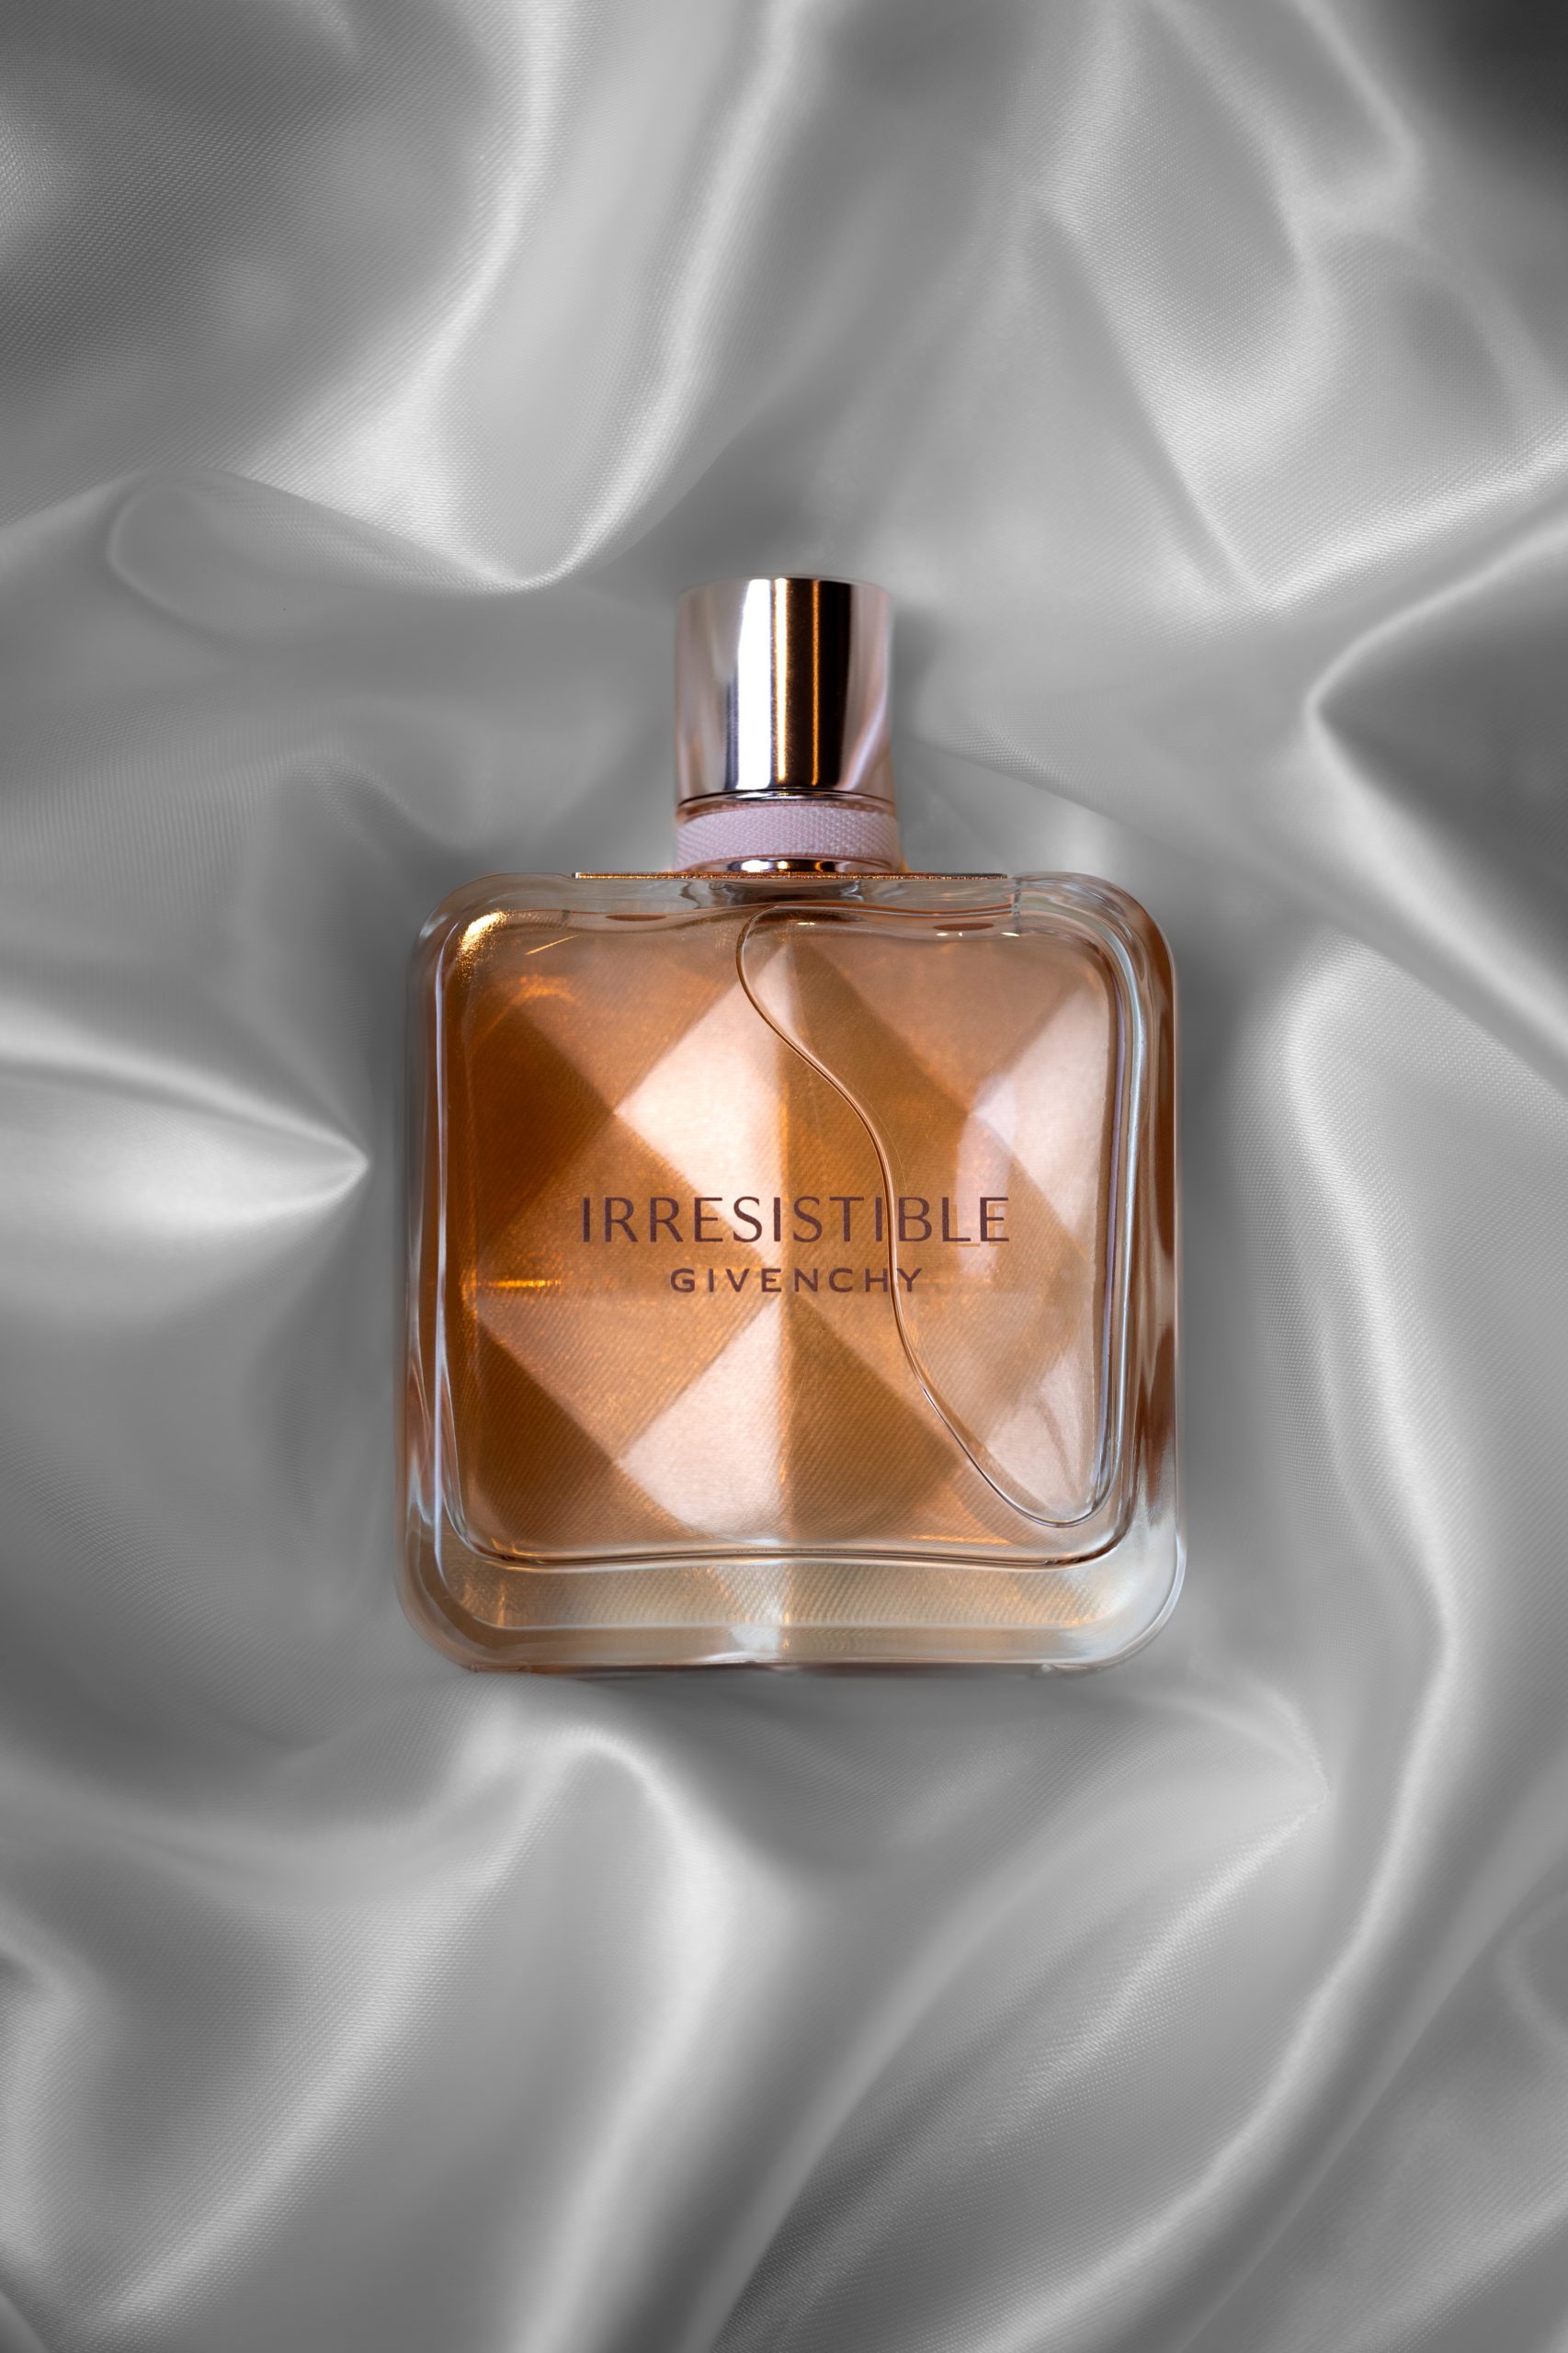 packshot Givenchy packaging parfum en still life nature morte avec set design